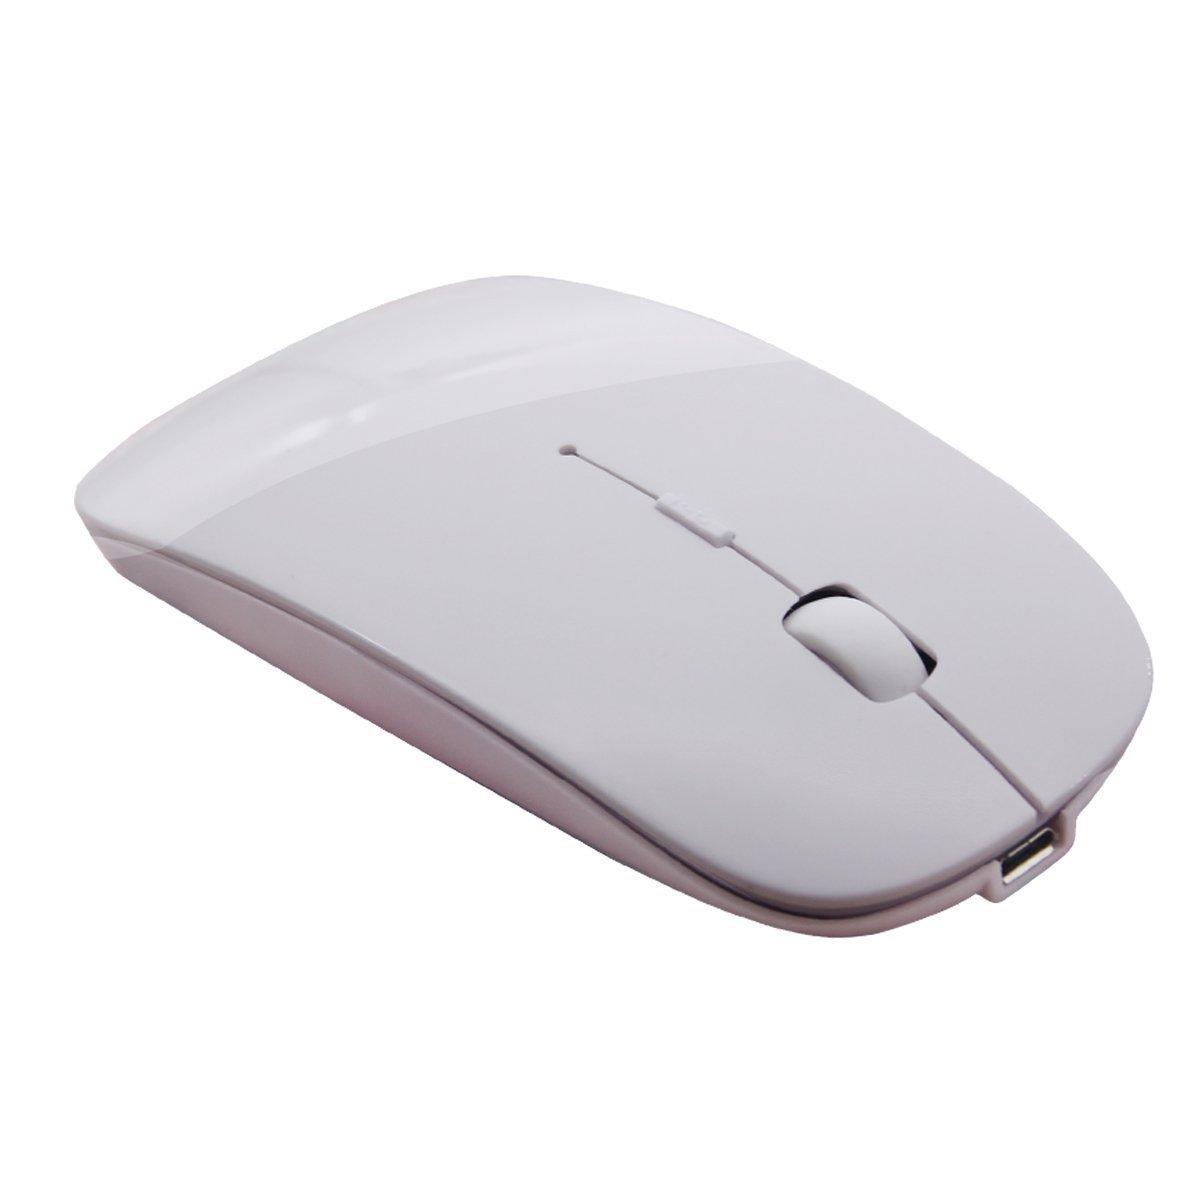 Vgn игровая мышь беспроводная dragonfly. GHZ Ultra Slim Wireless Mouse Wireless Optical Mouse. Беспроводная мышь Samsung Bluetooth Mouse Slim. Мышка блютуз для макбука. Мышка для макбука Air m2 mag2.